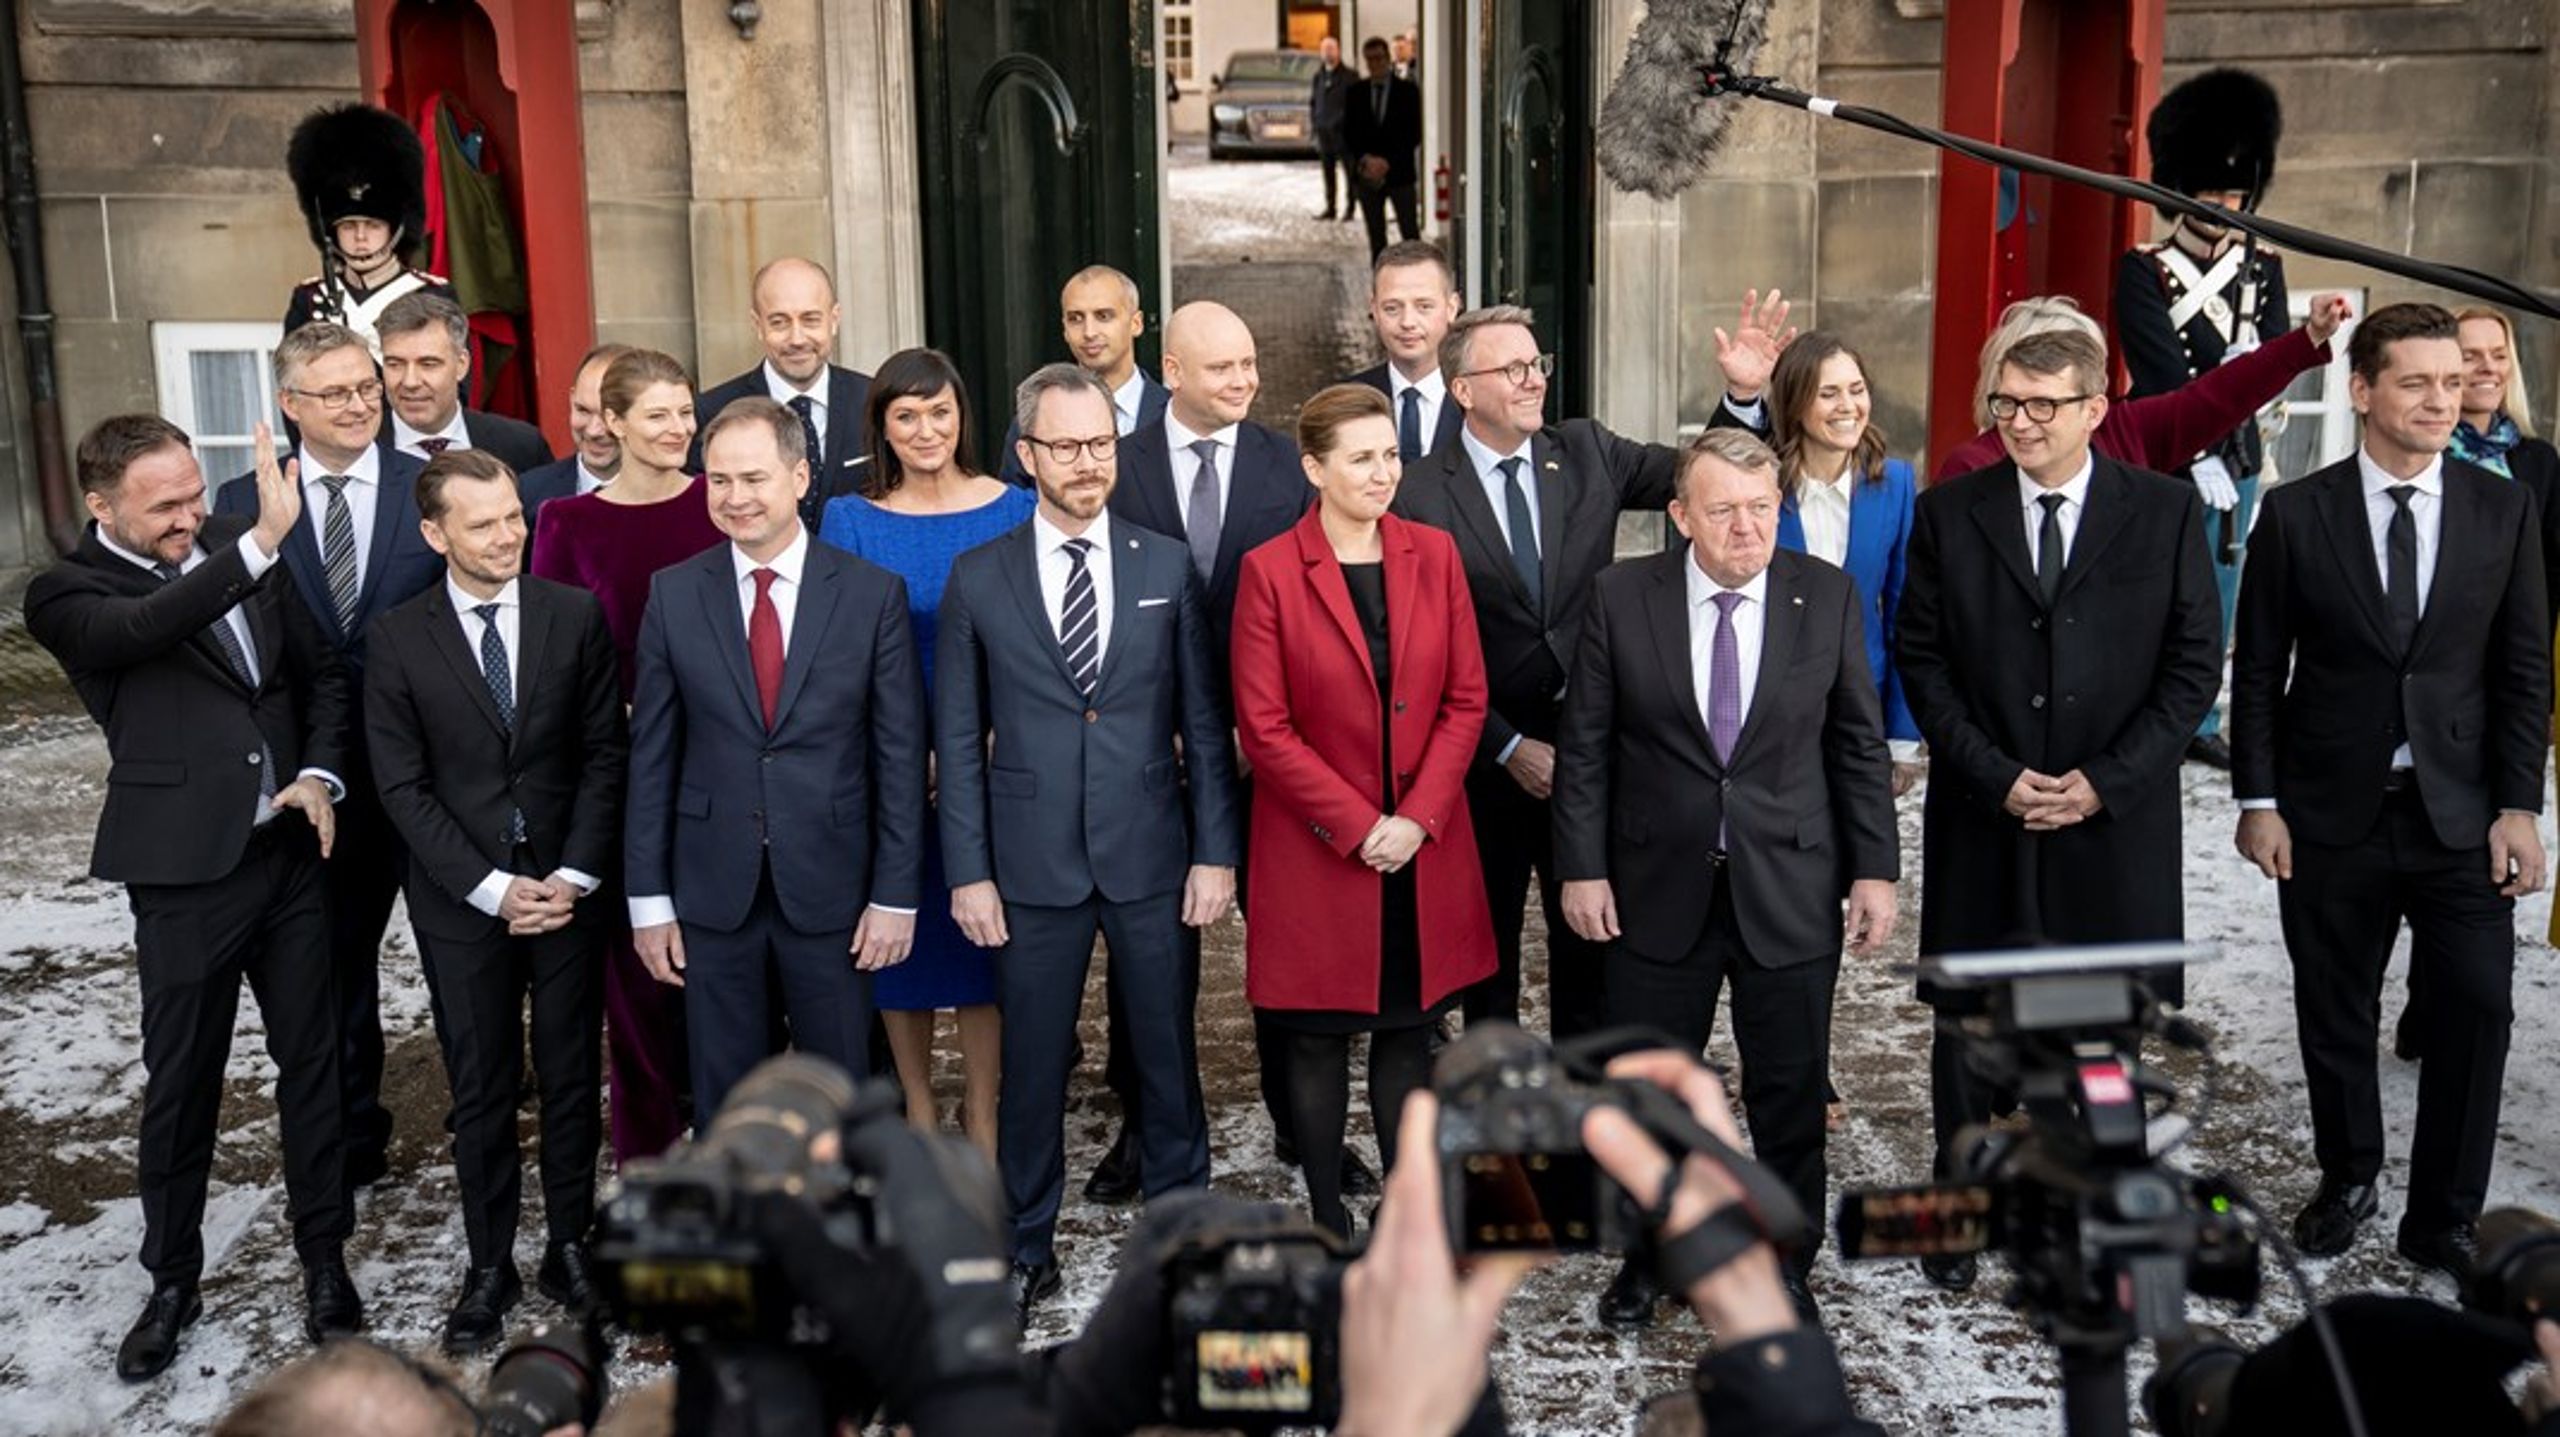 SVM-regeringen blev præsenteret 15. december ved Amalienborg.